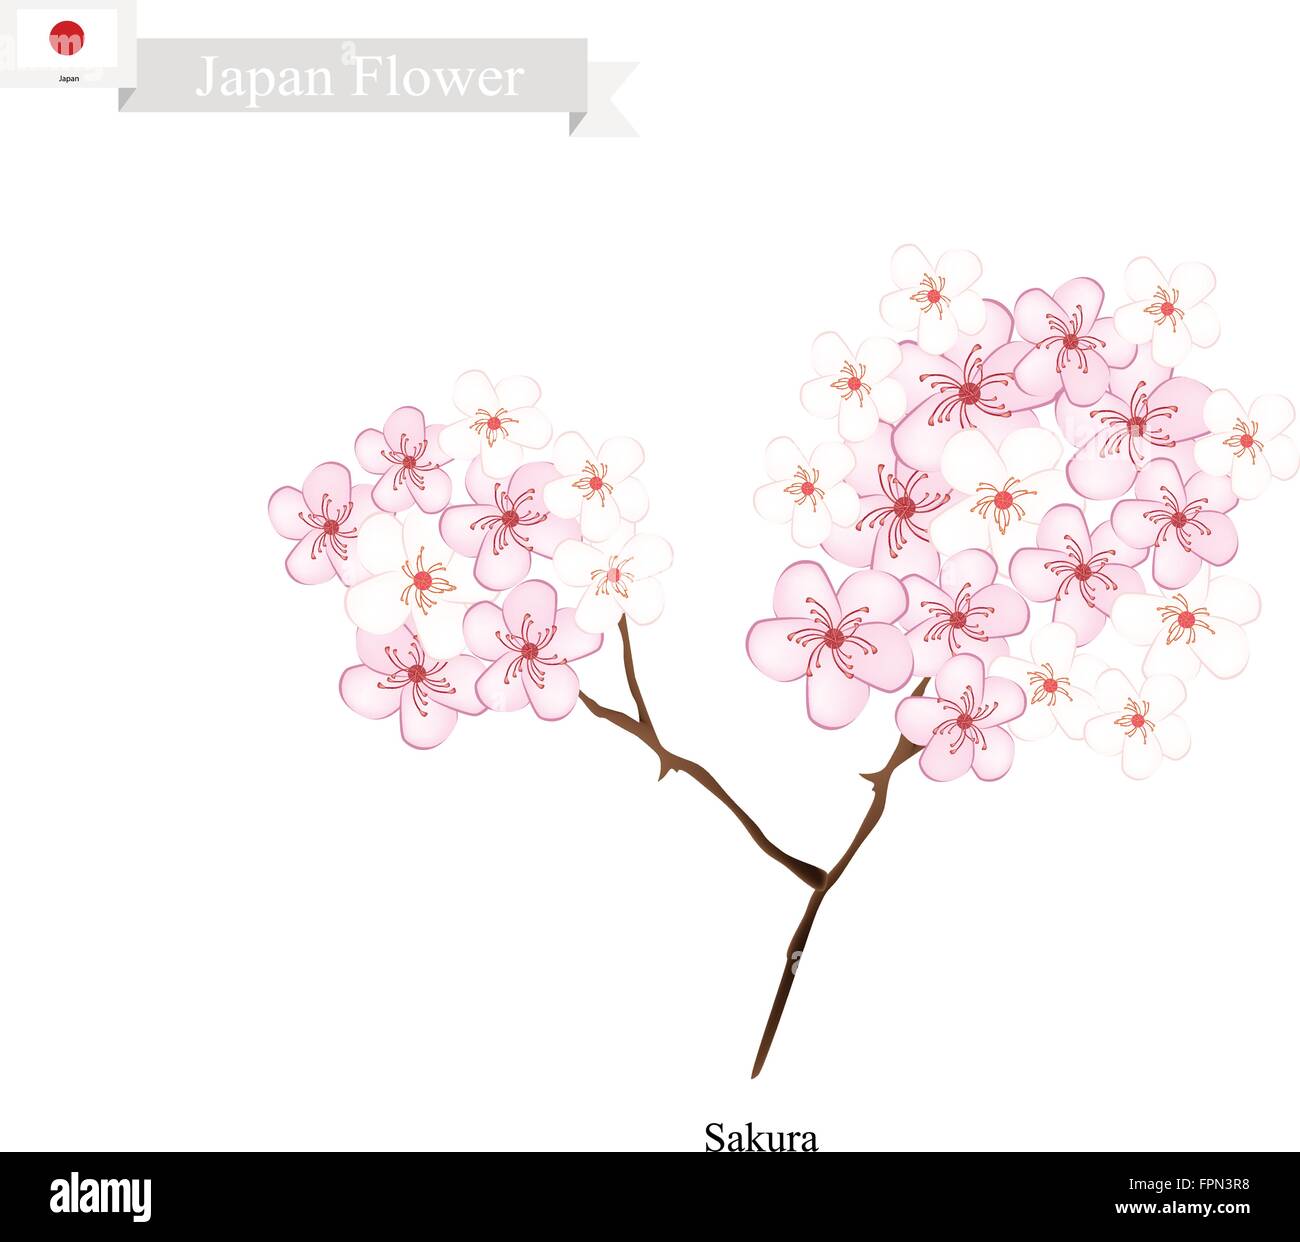 Japan Flower, Illustration of Sakura, Cherry Blossom or Japanese Cherry. The National Flower of Japan. Stock Vector